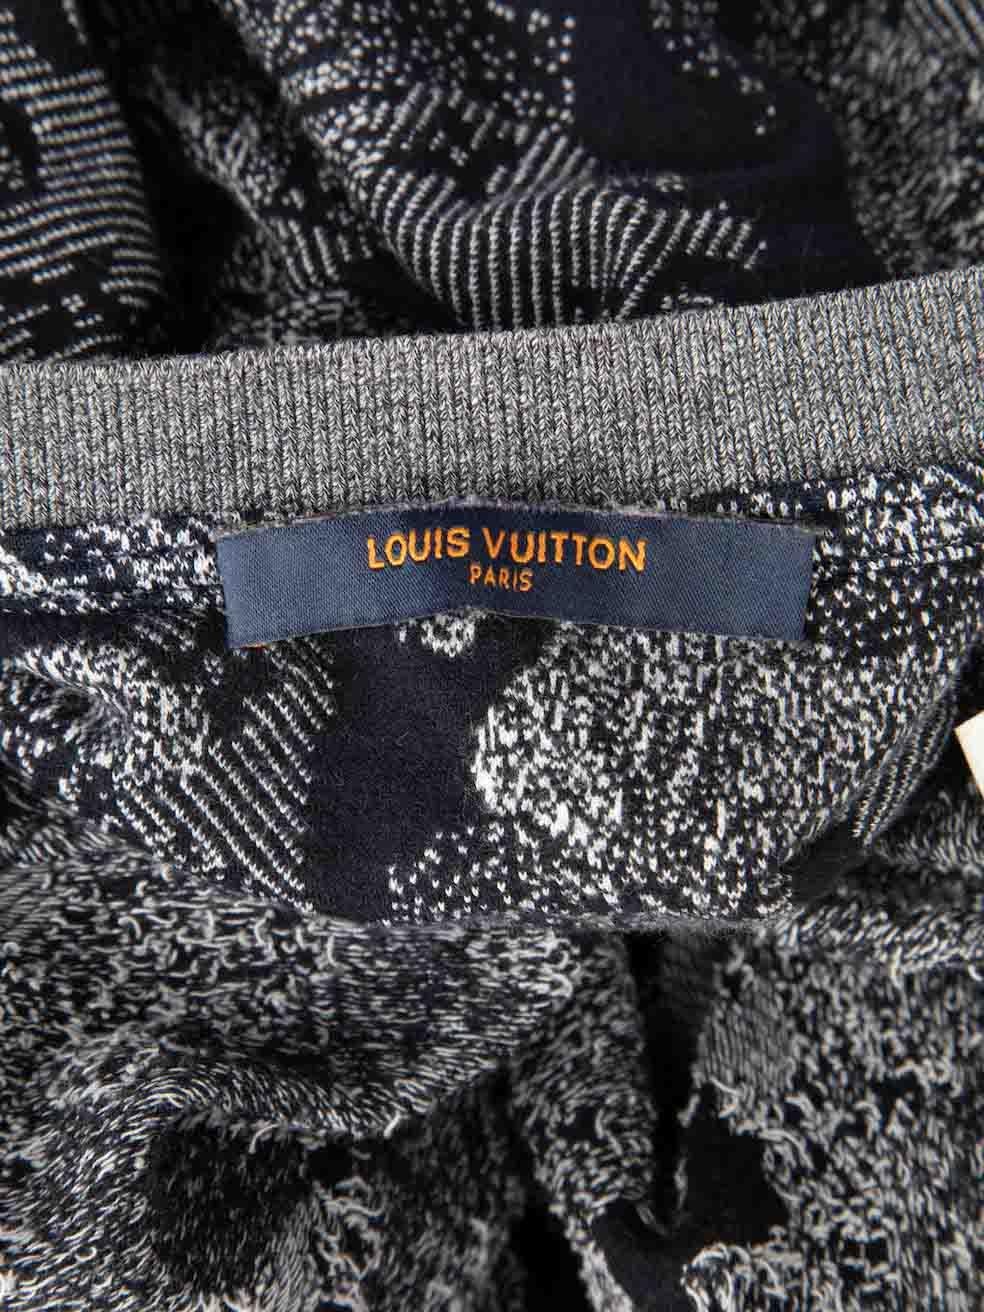 Louis Vuitton Navy Camo Monogram Jacquard Top Size XL For Sale 2